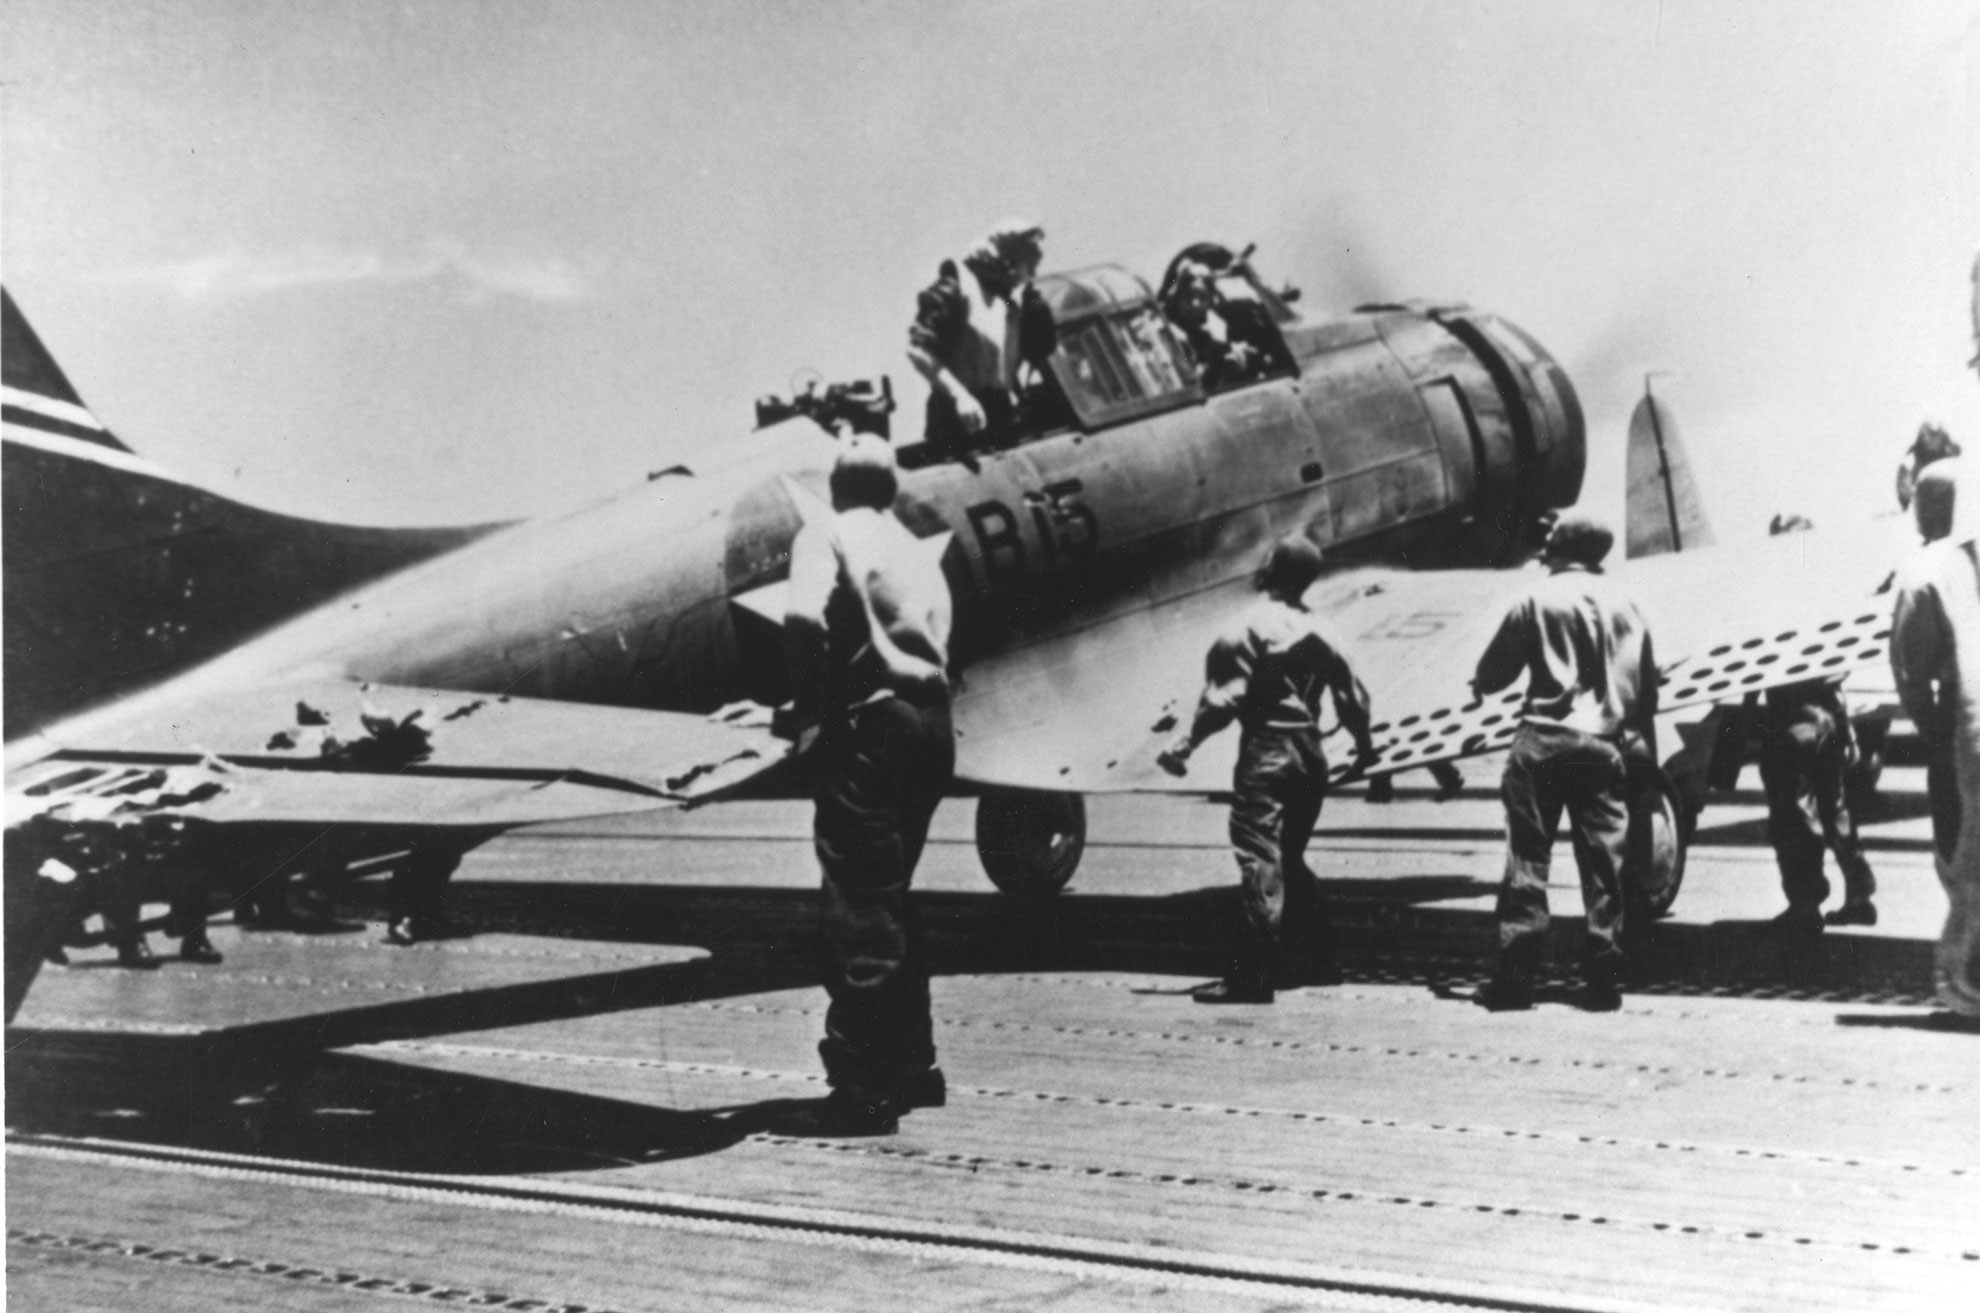 Retour d'un SBD-3 après avoir bombardé le Kaga -- Photo US Navy. -